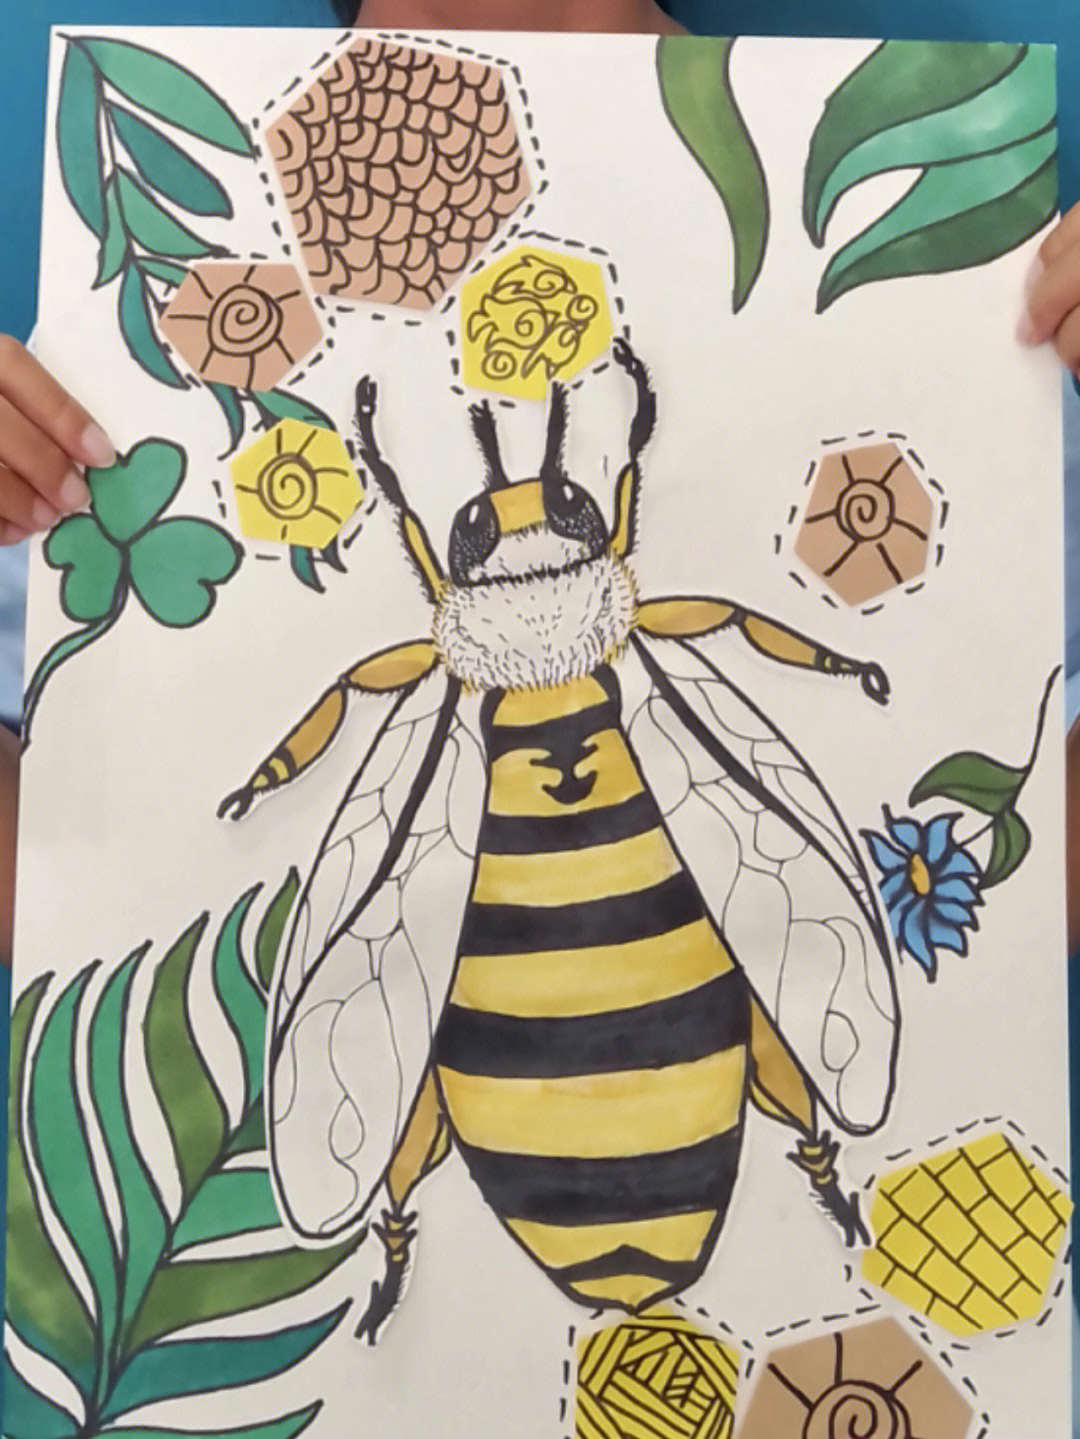 三年级蜜蜂动作图片